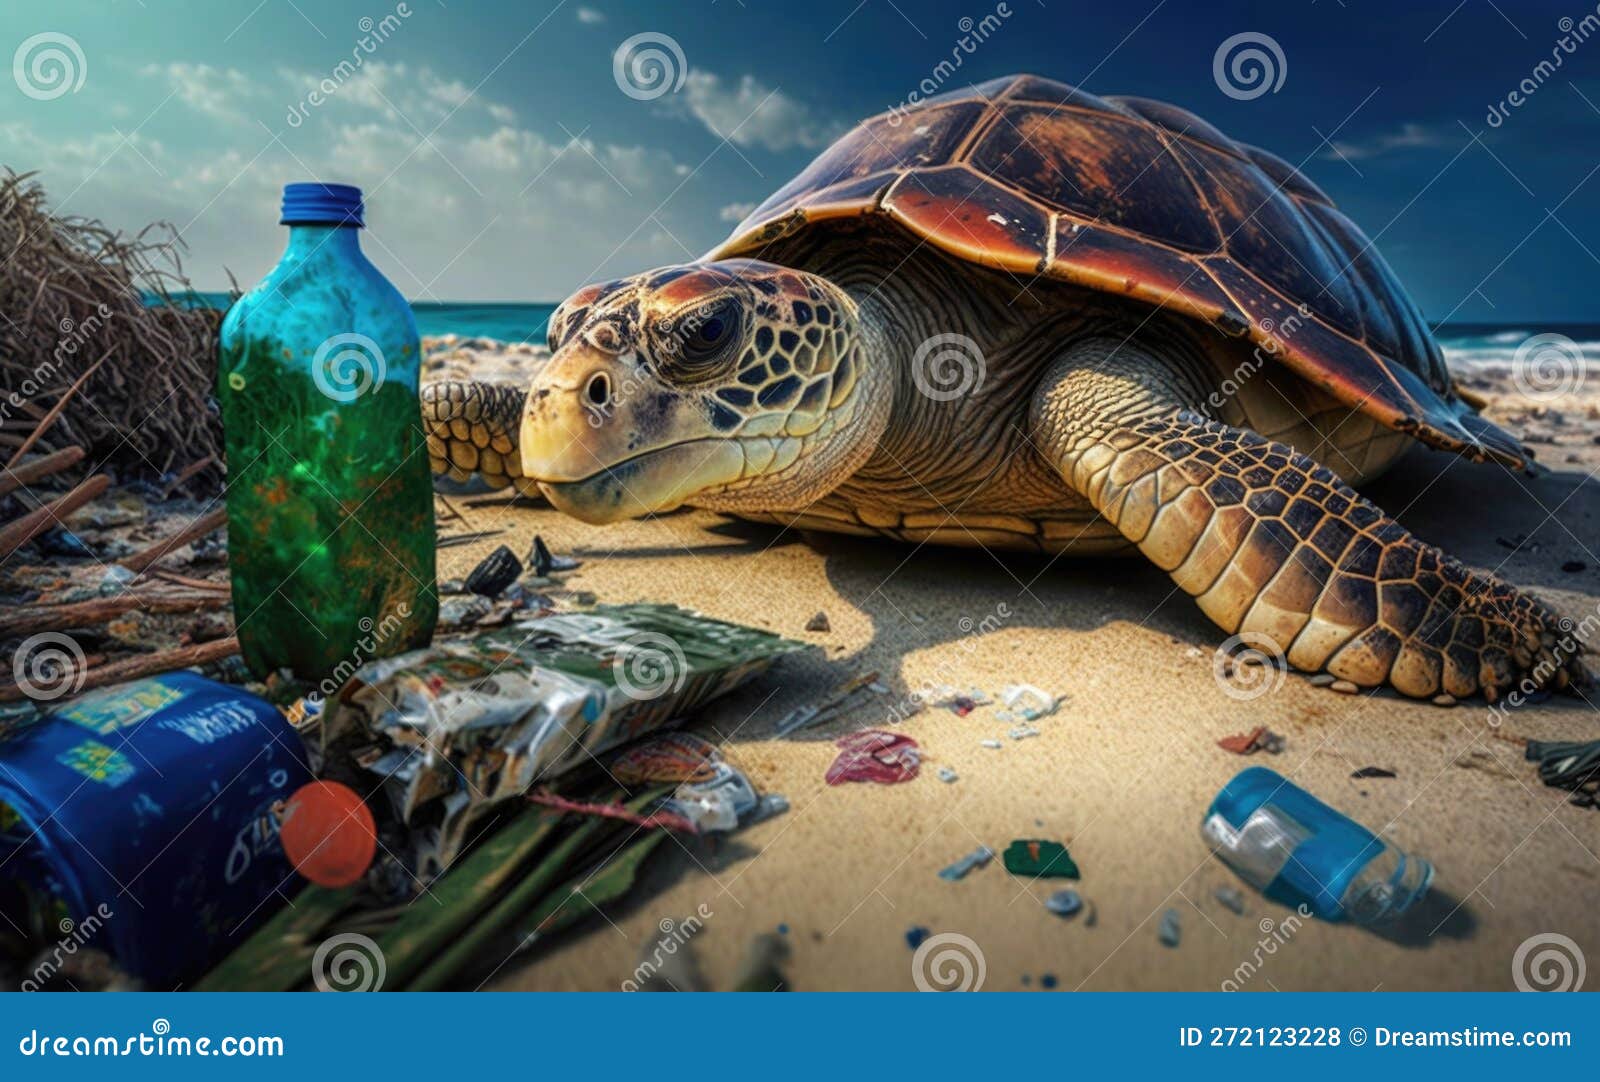 Fensterfolie [quer] - Green Sea Turtle – creatisto